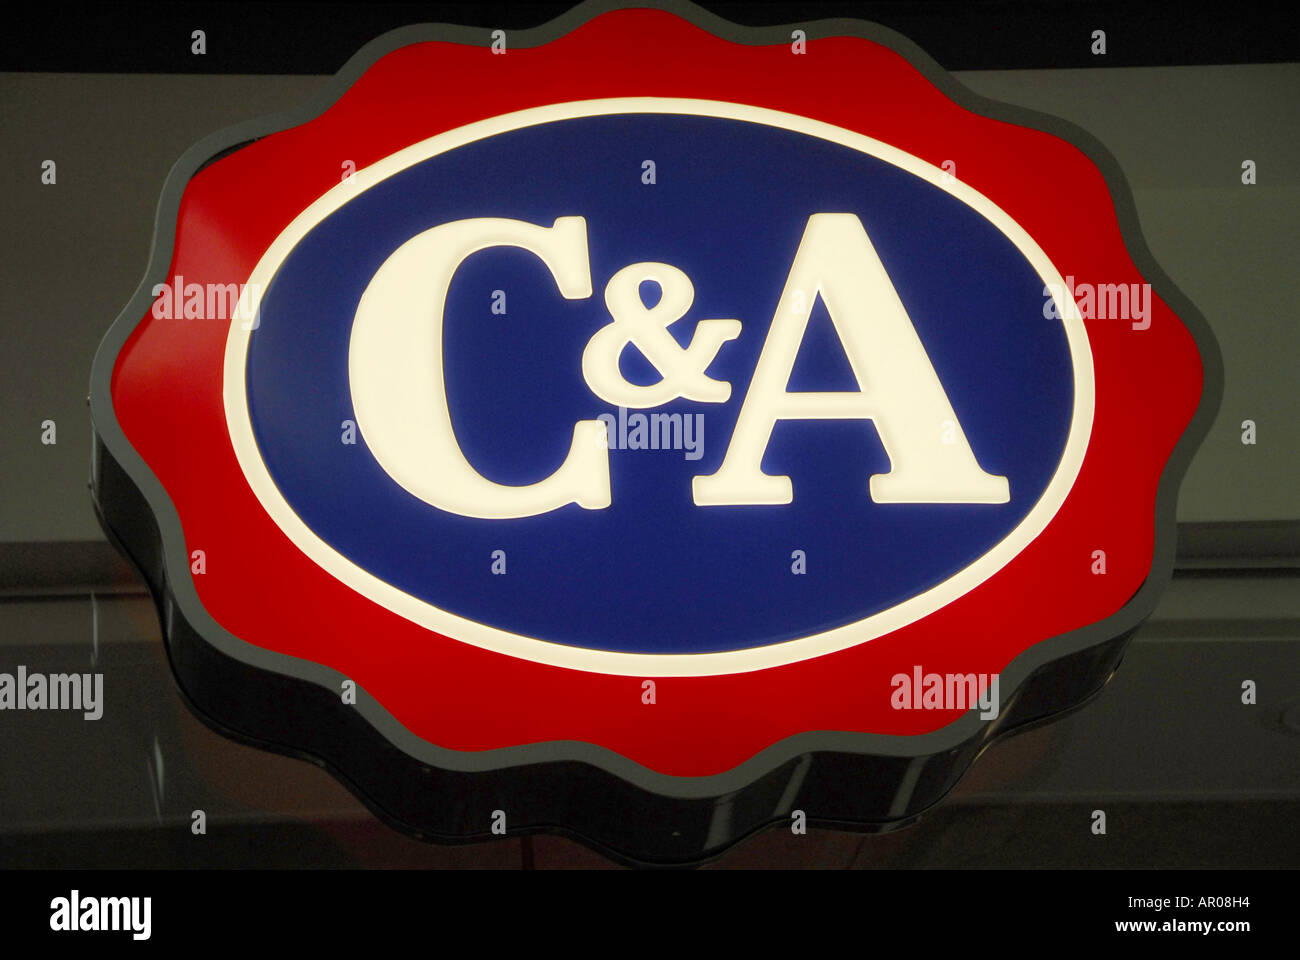 C&A marque, publicité lumineuse Banque D'Images